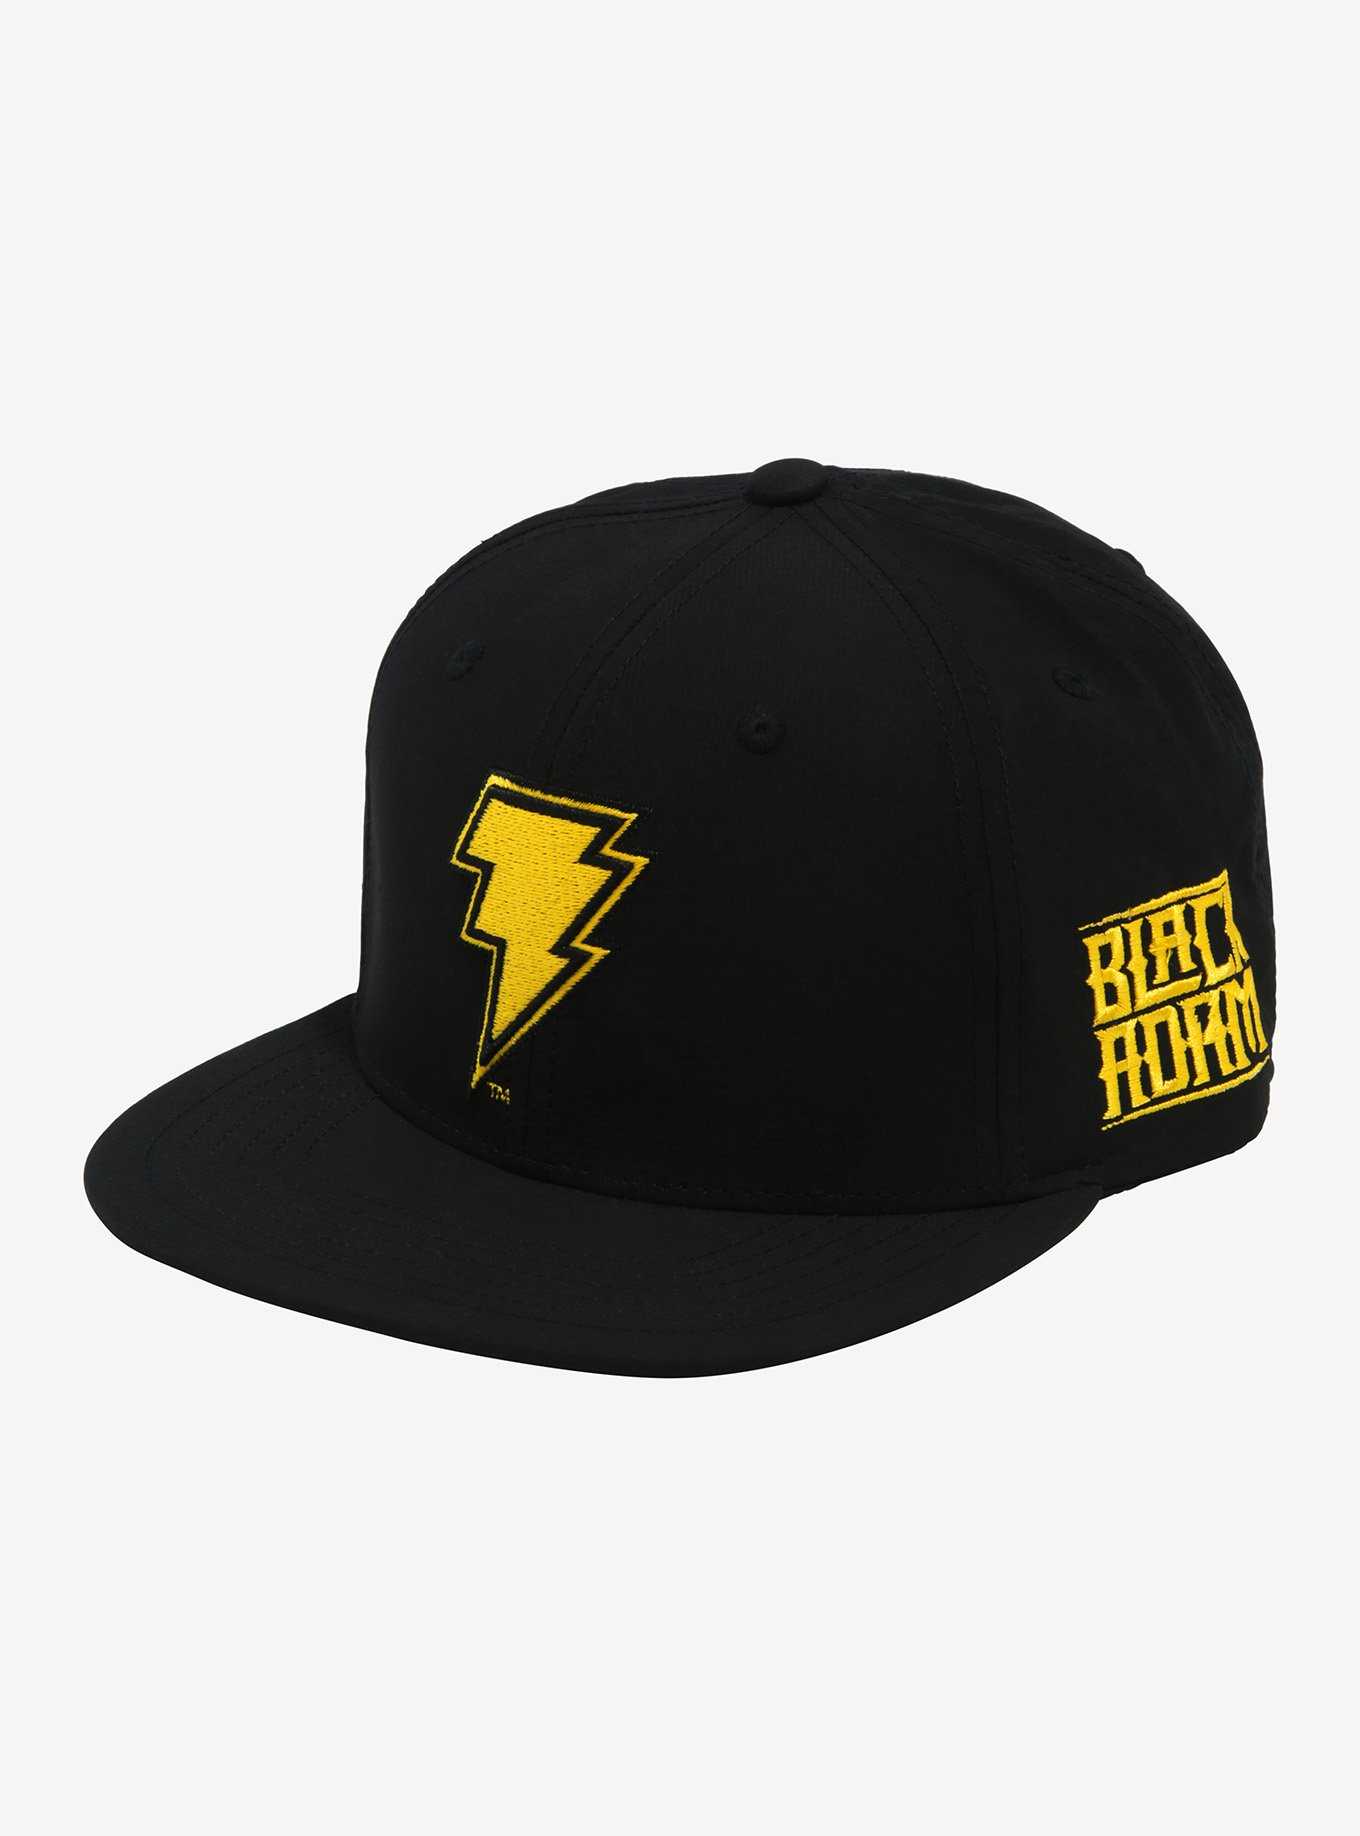 DC Comics Black Adam Logo Snapback Hat, , hi-res